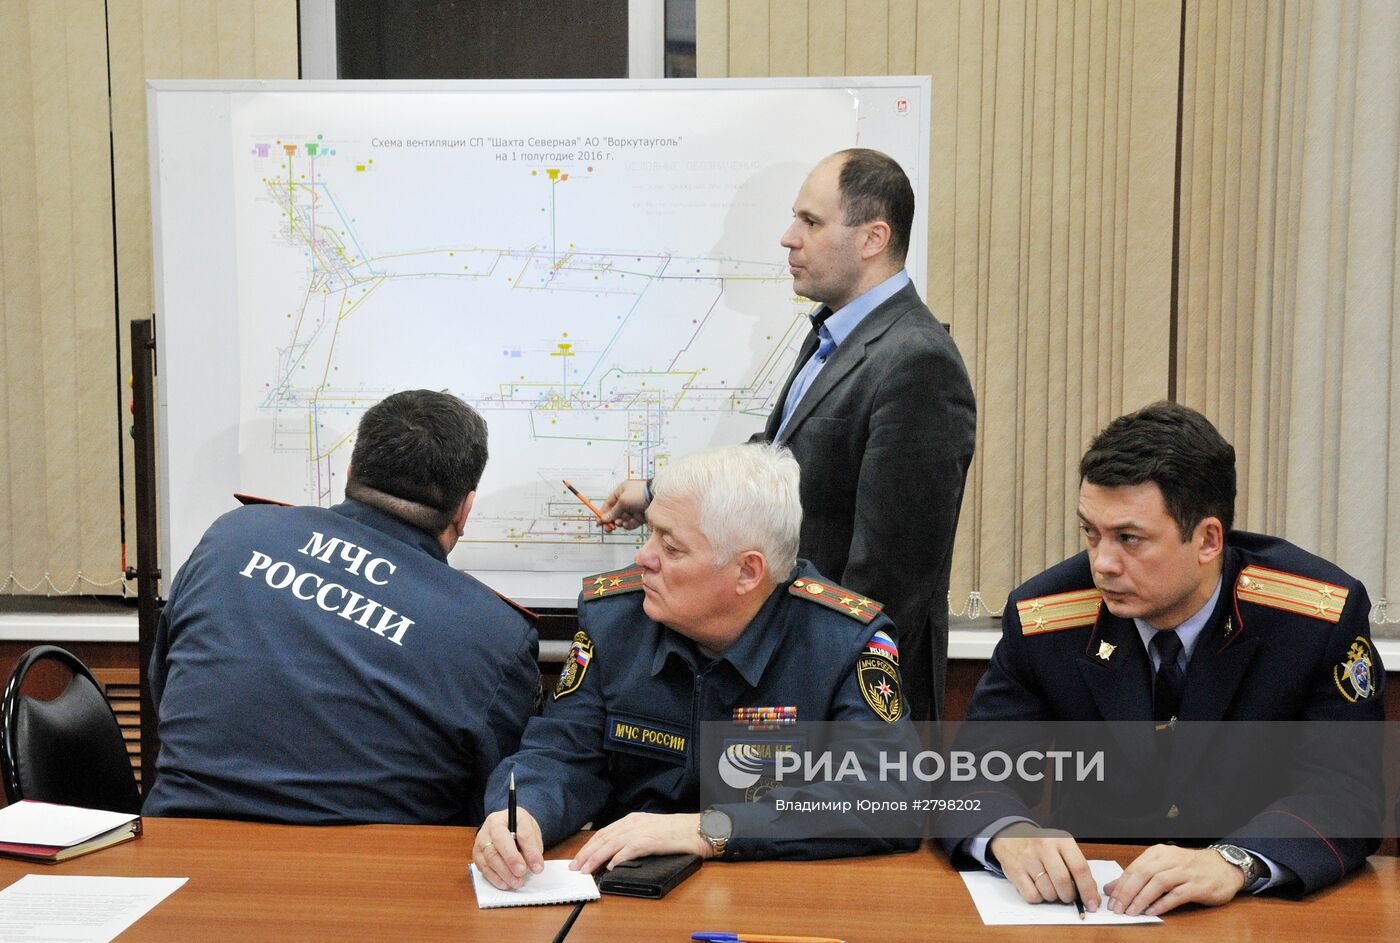 Глава МЧС В. Пучков провел выездное заседание рабочей группы по предупреждению и ликвидации ЧС